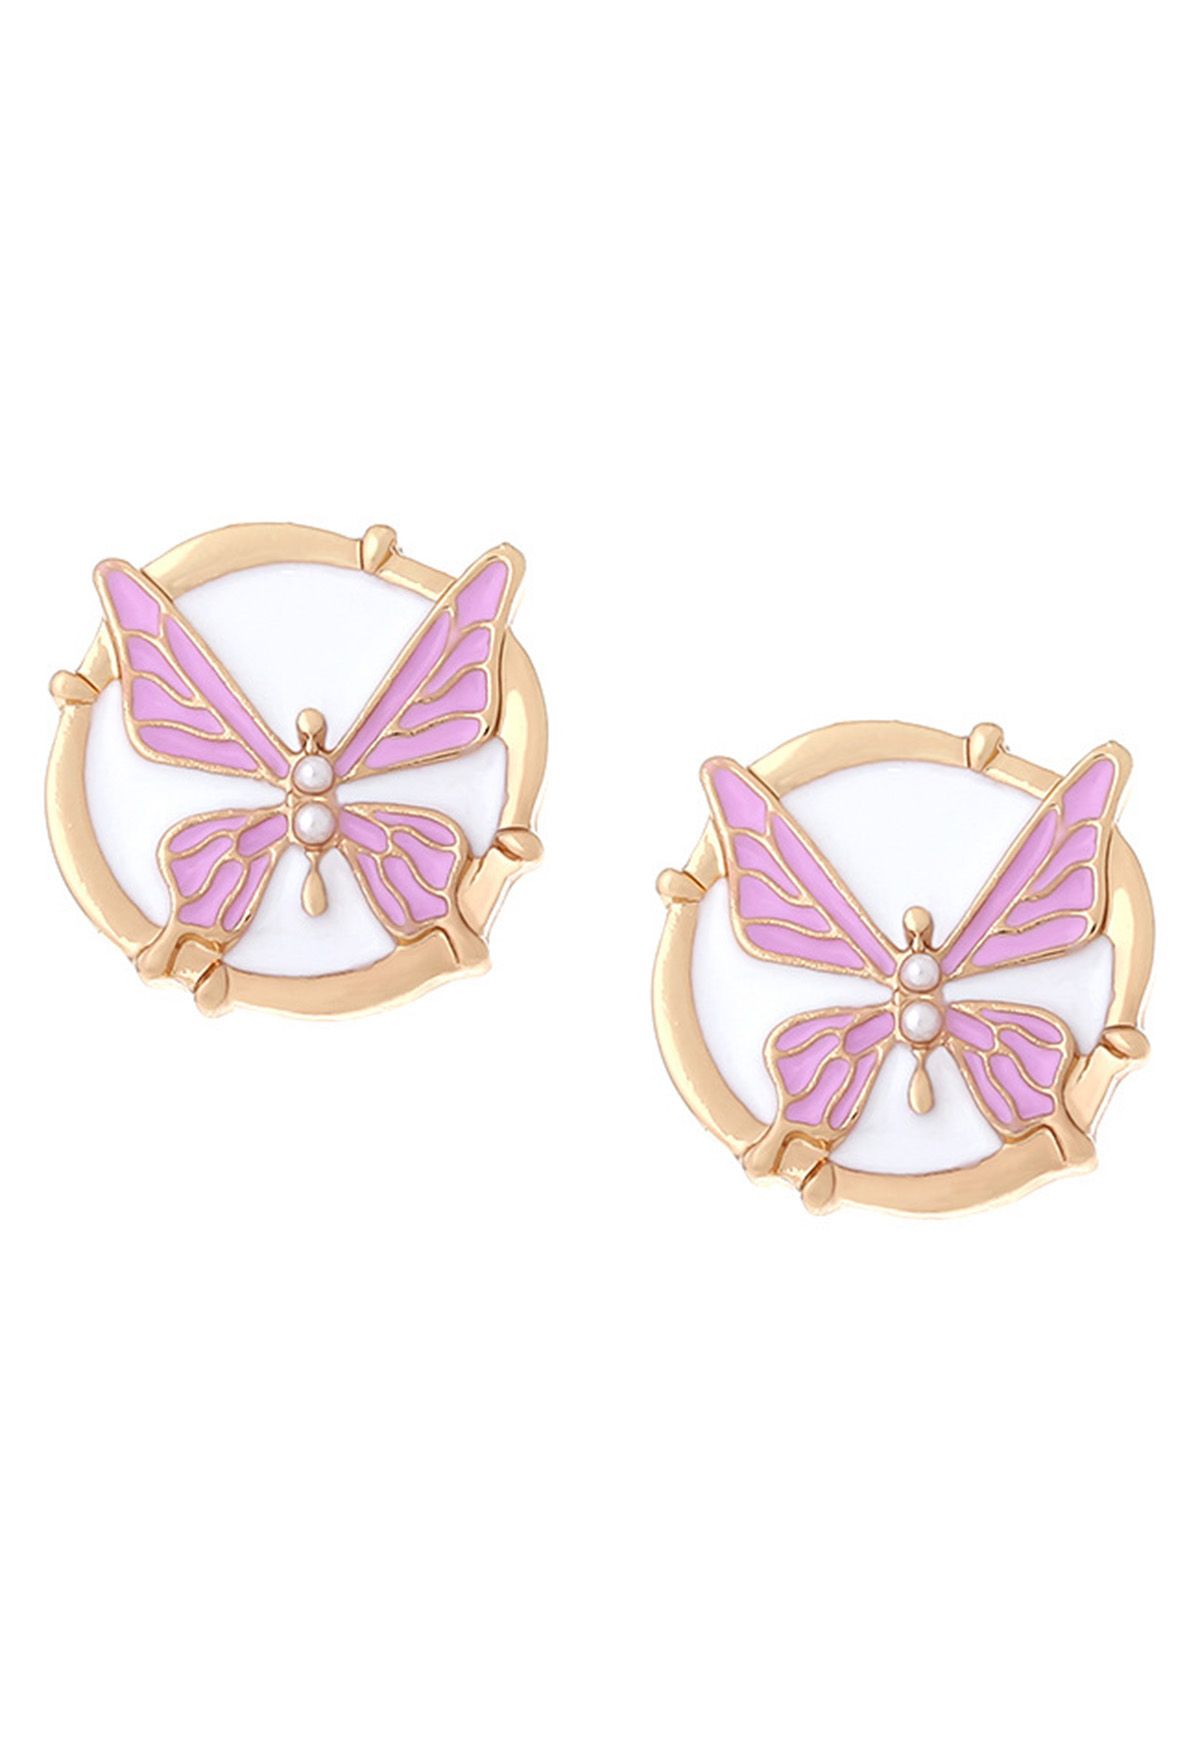 Metall-Schmetterlings-Ohrringe, aus denen Öl ausläuft, in Flieder